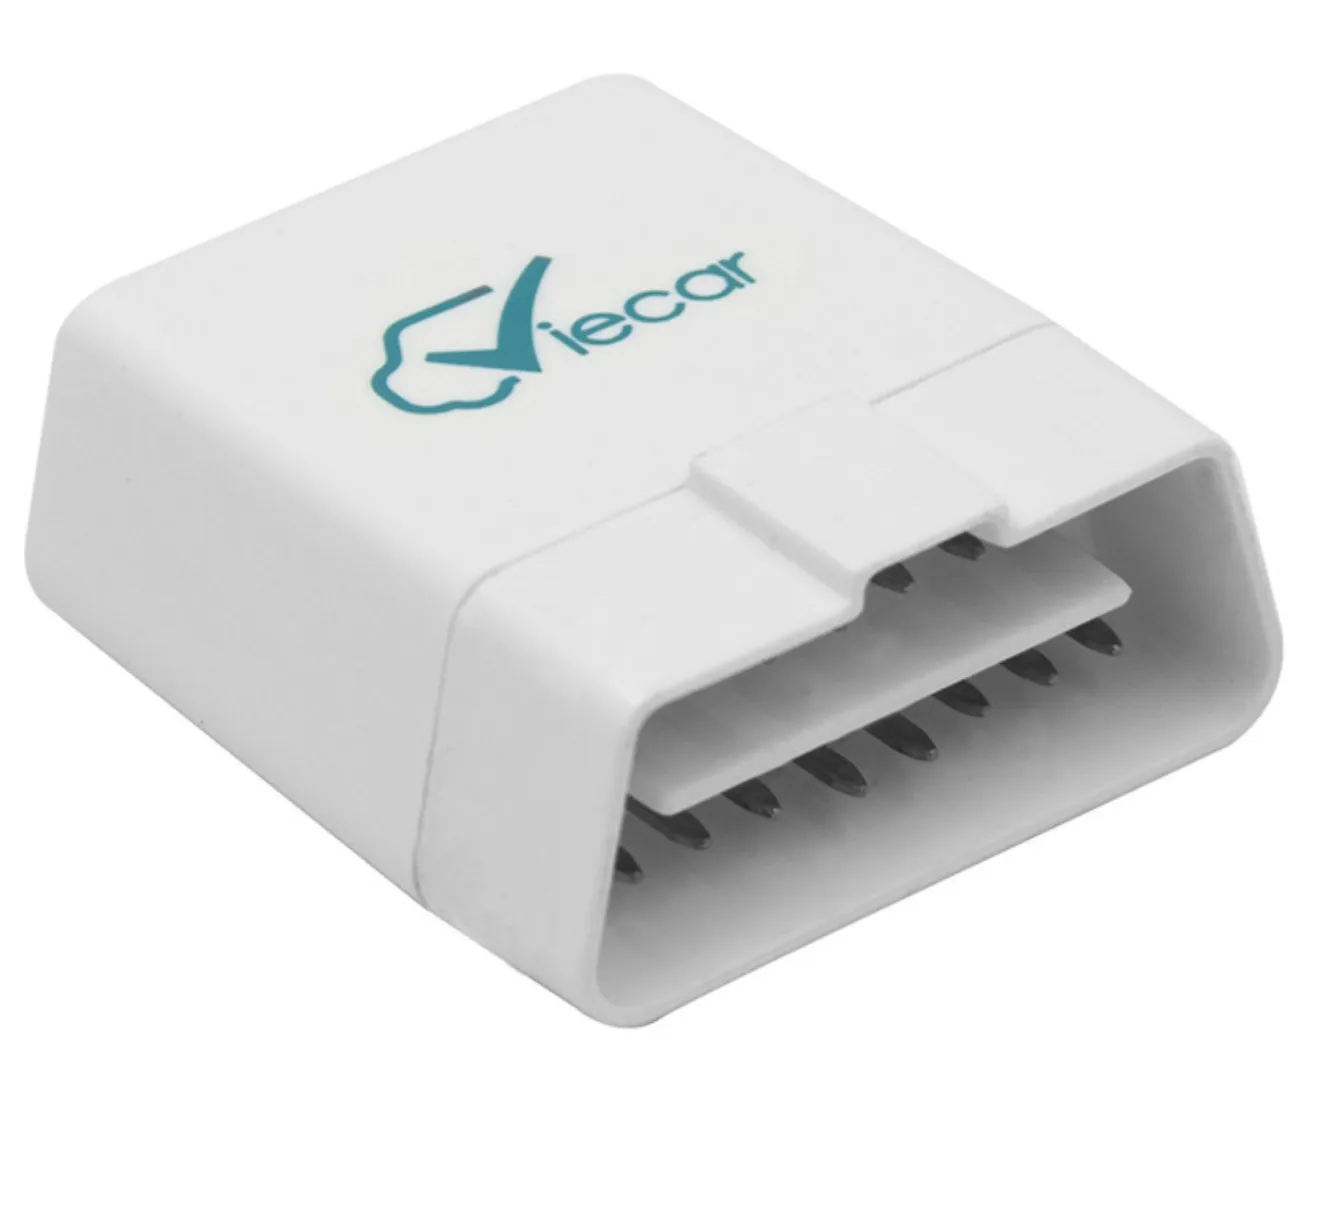 Originale Bluetooth 4.0 Obd2 Lettore diagnostico per auto Scanner Viecar VC100 Strumento diagnostico Obd per l'apprendimento dell'automobile